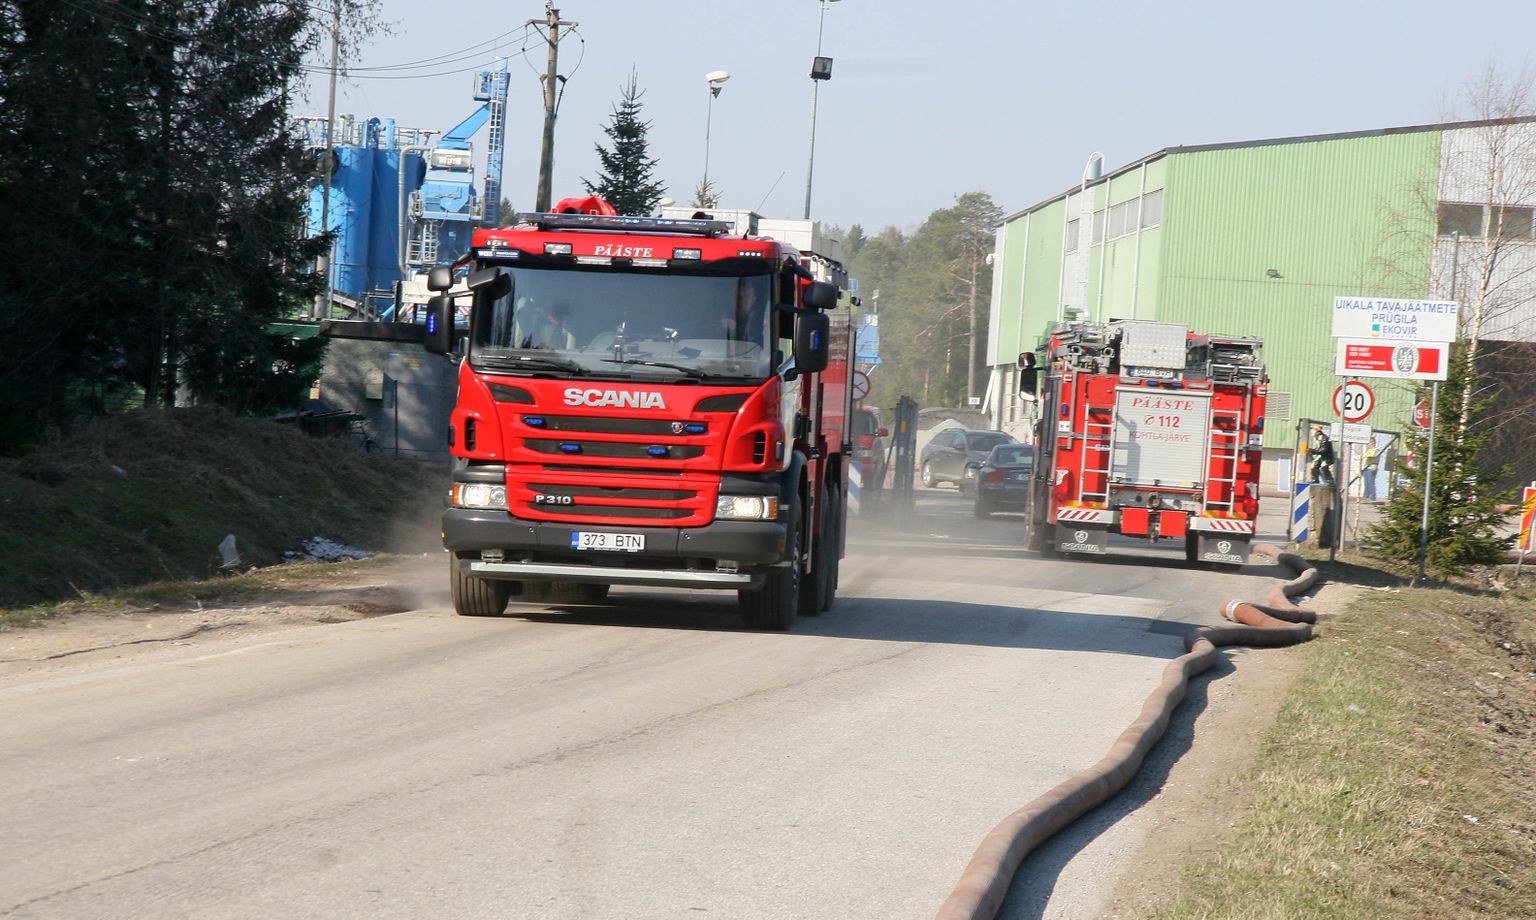 Päästeautod on Uikala prügilas sagedased külalised. Juuresolev pilt on tehtud 2019. aprillis, kui seal oli järjekordne põleng.